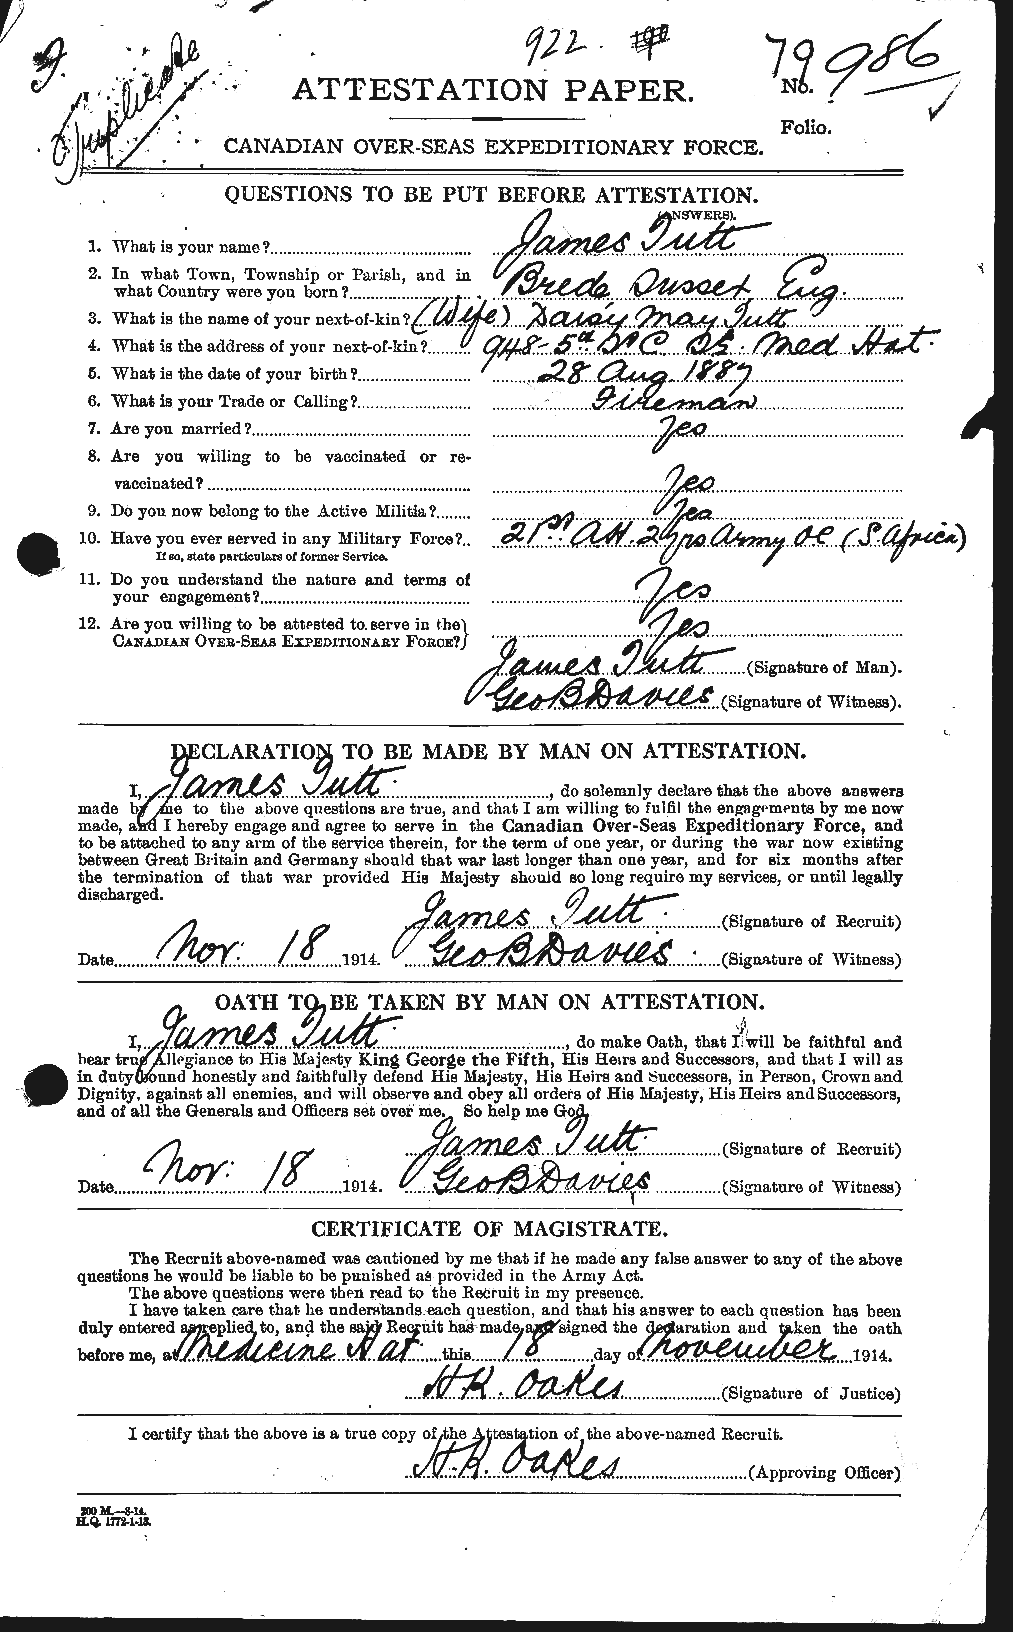 Dossiers du Personnel de la Première Guerre mondiale - CEC 645338a